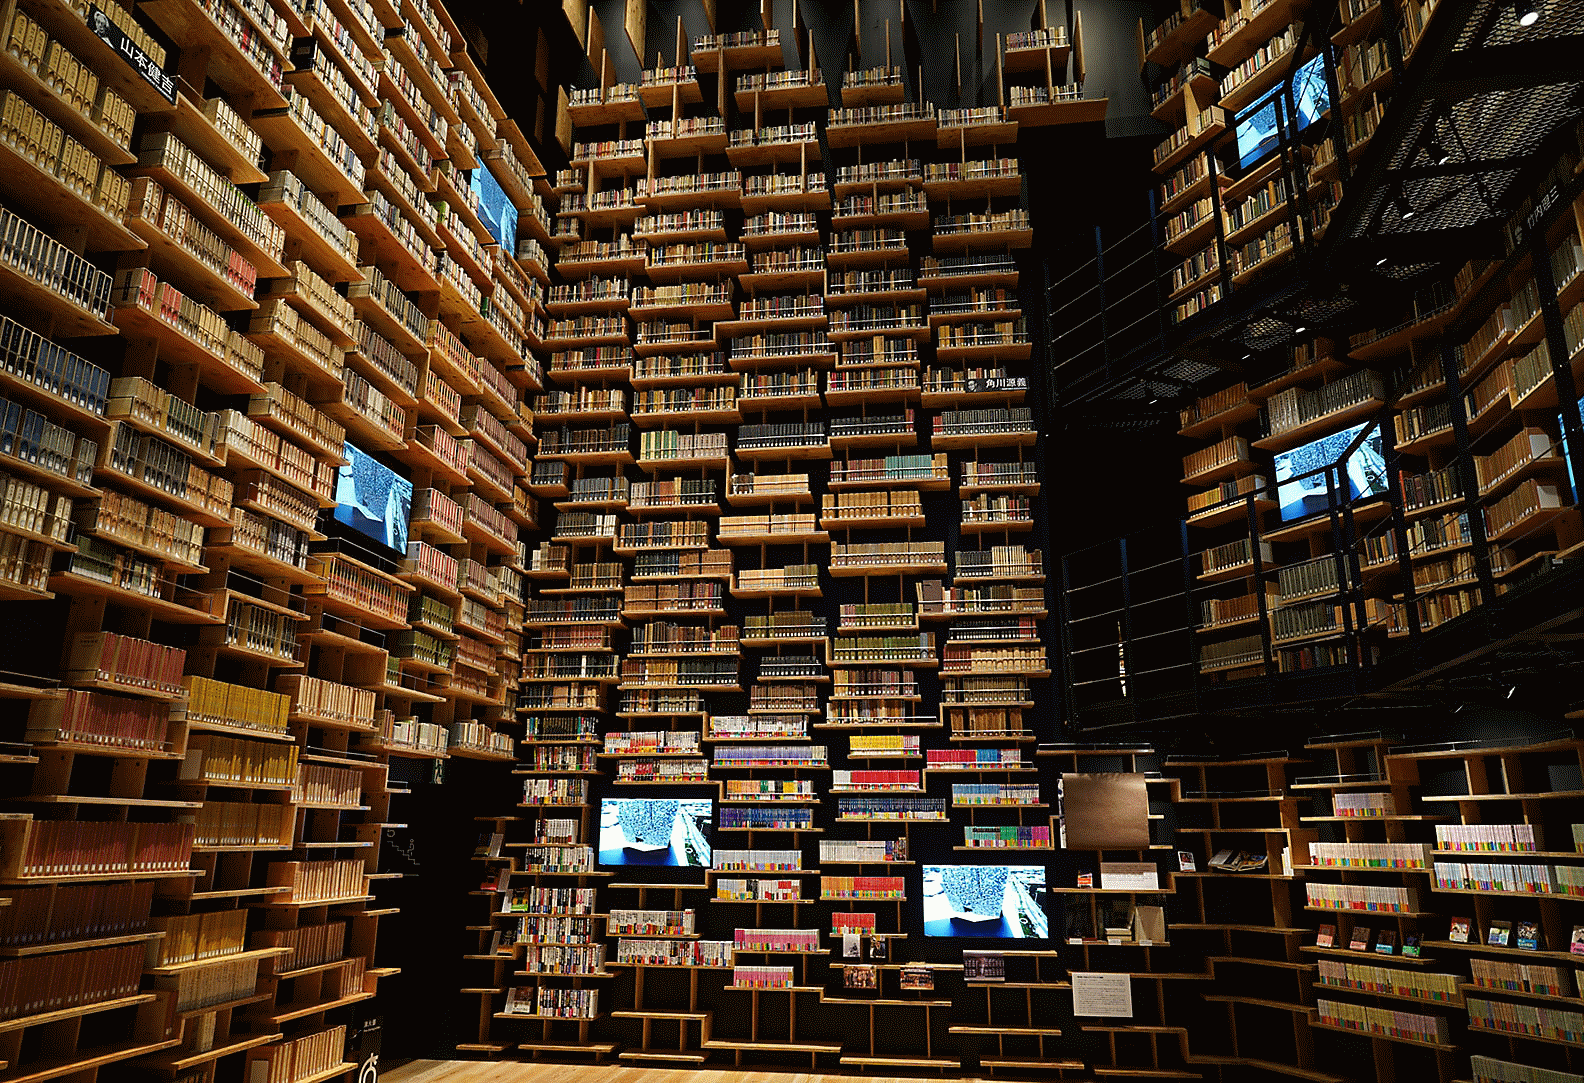 Zdjęcie wnętrza biblioteki zrobione tym obiektywem z bardzo wysoką rozdzielczością w każdym rogu